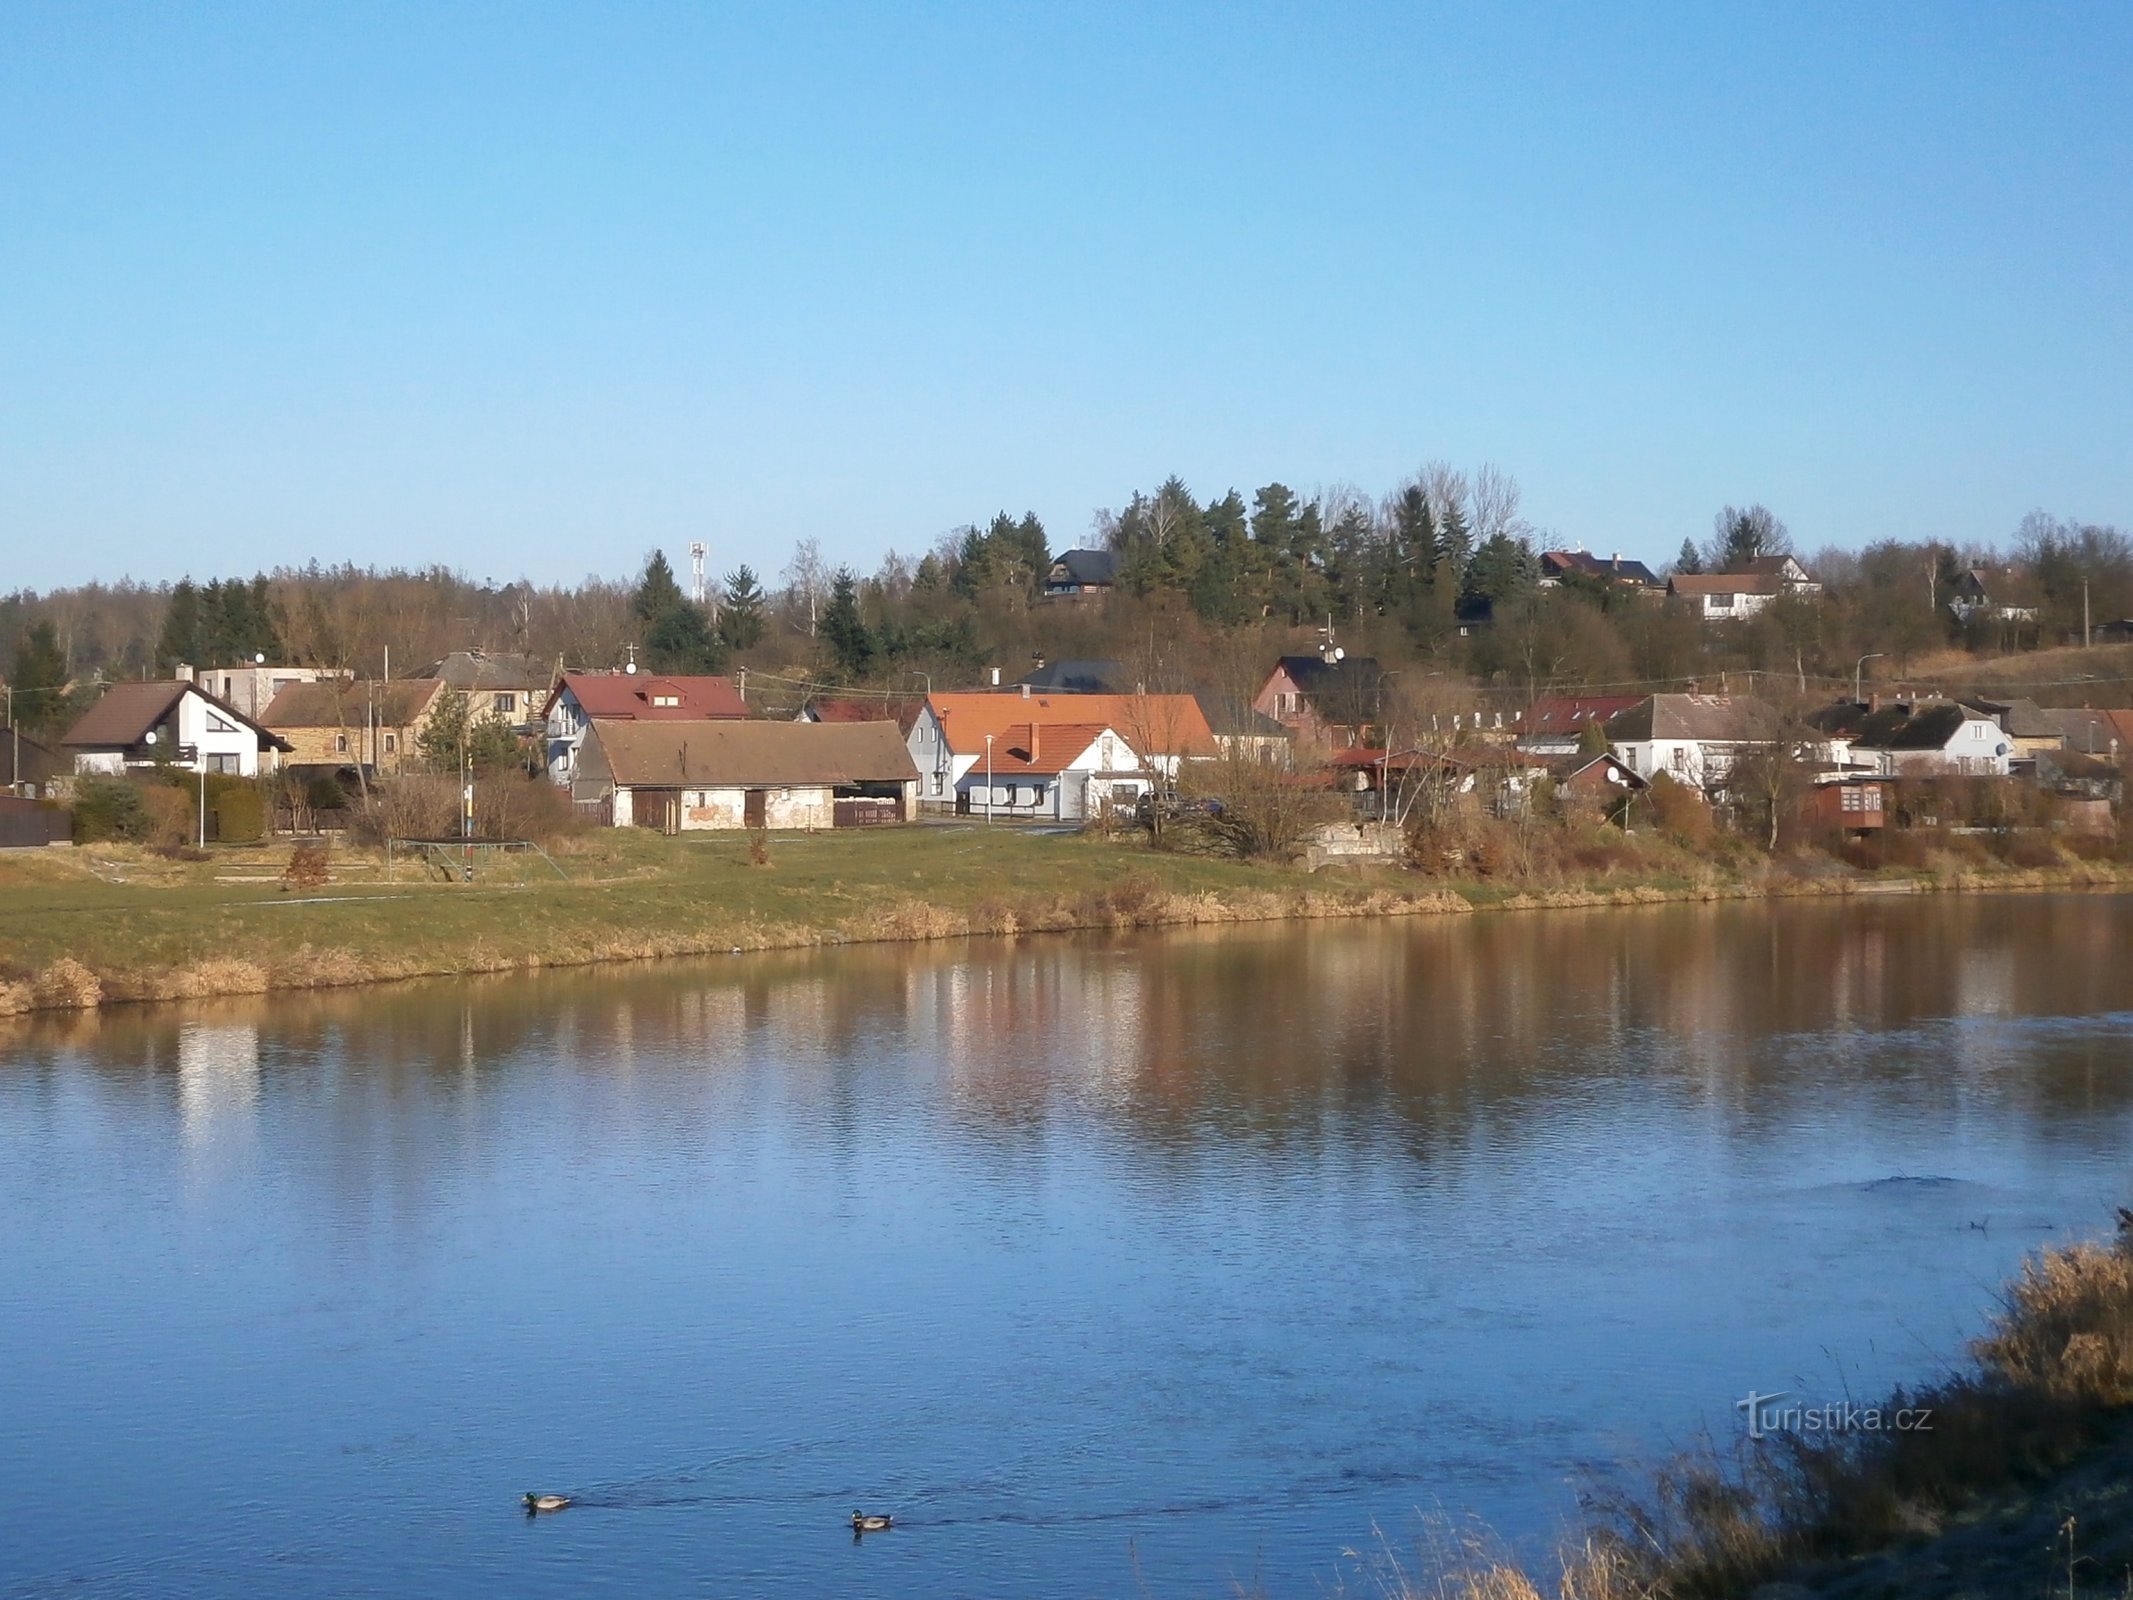 El lugar donde estaba hoy el molino de Podhůra (Hradec Králové, 6.1.2015 de enero de XNUMX)